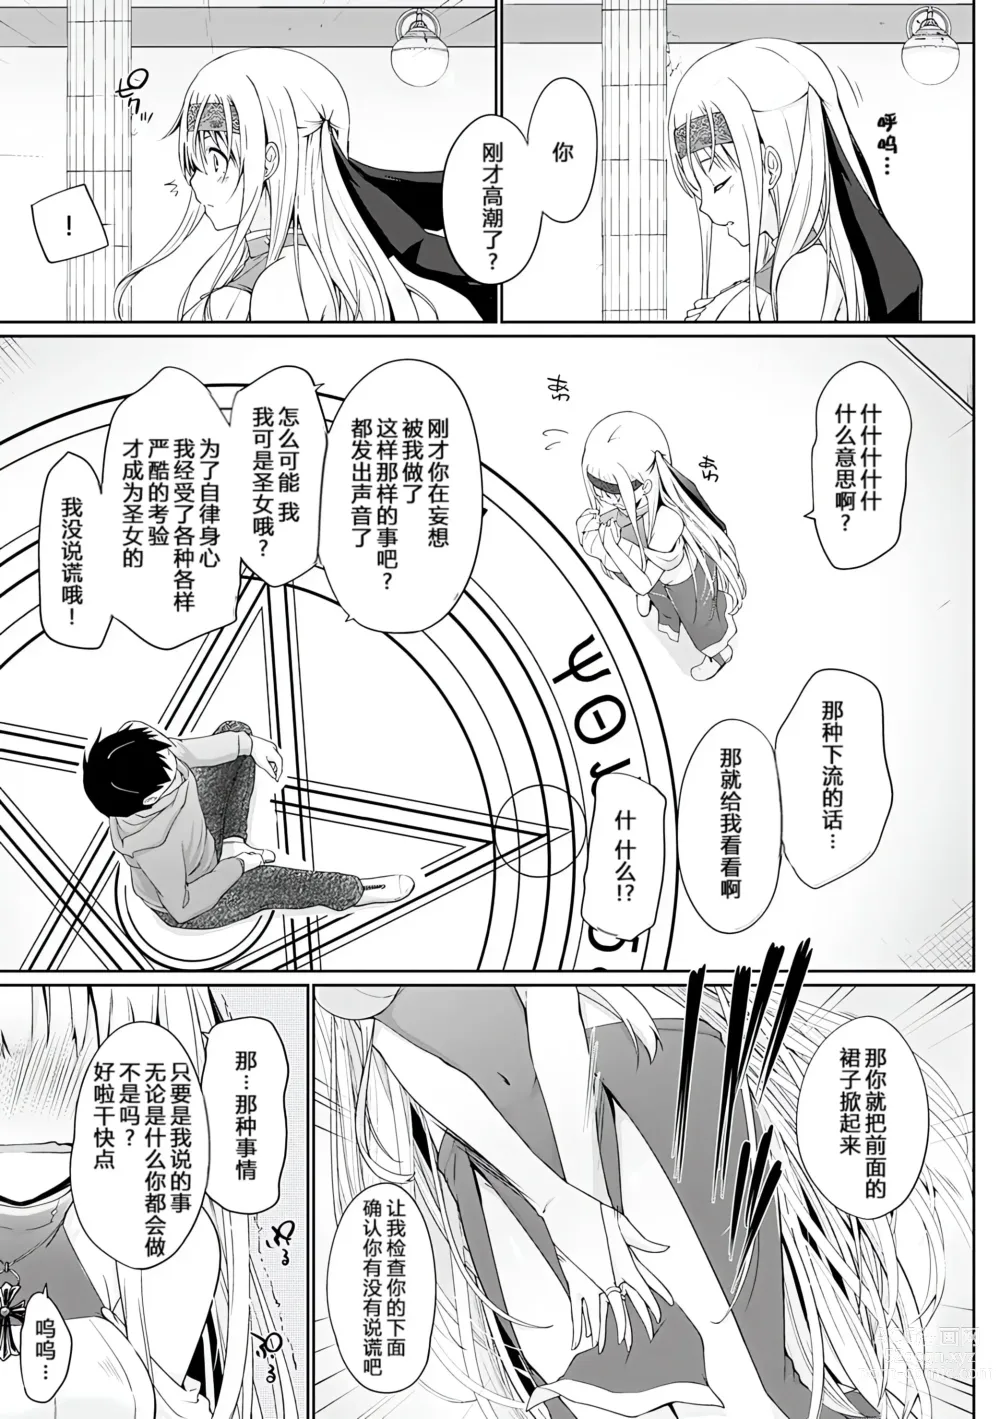 Page 8 of manga Isekai ni Shoukansaretara Zenin Do M Toka...Chotto Imi ga Wakaranai